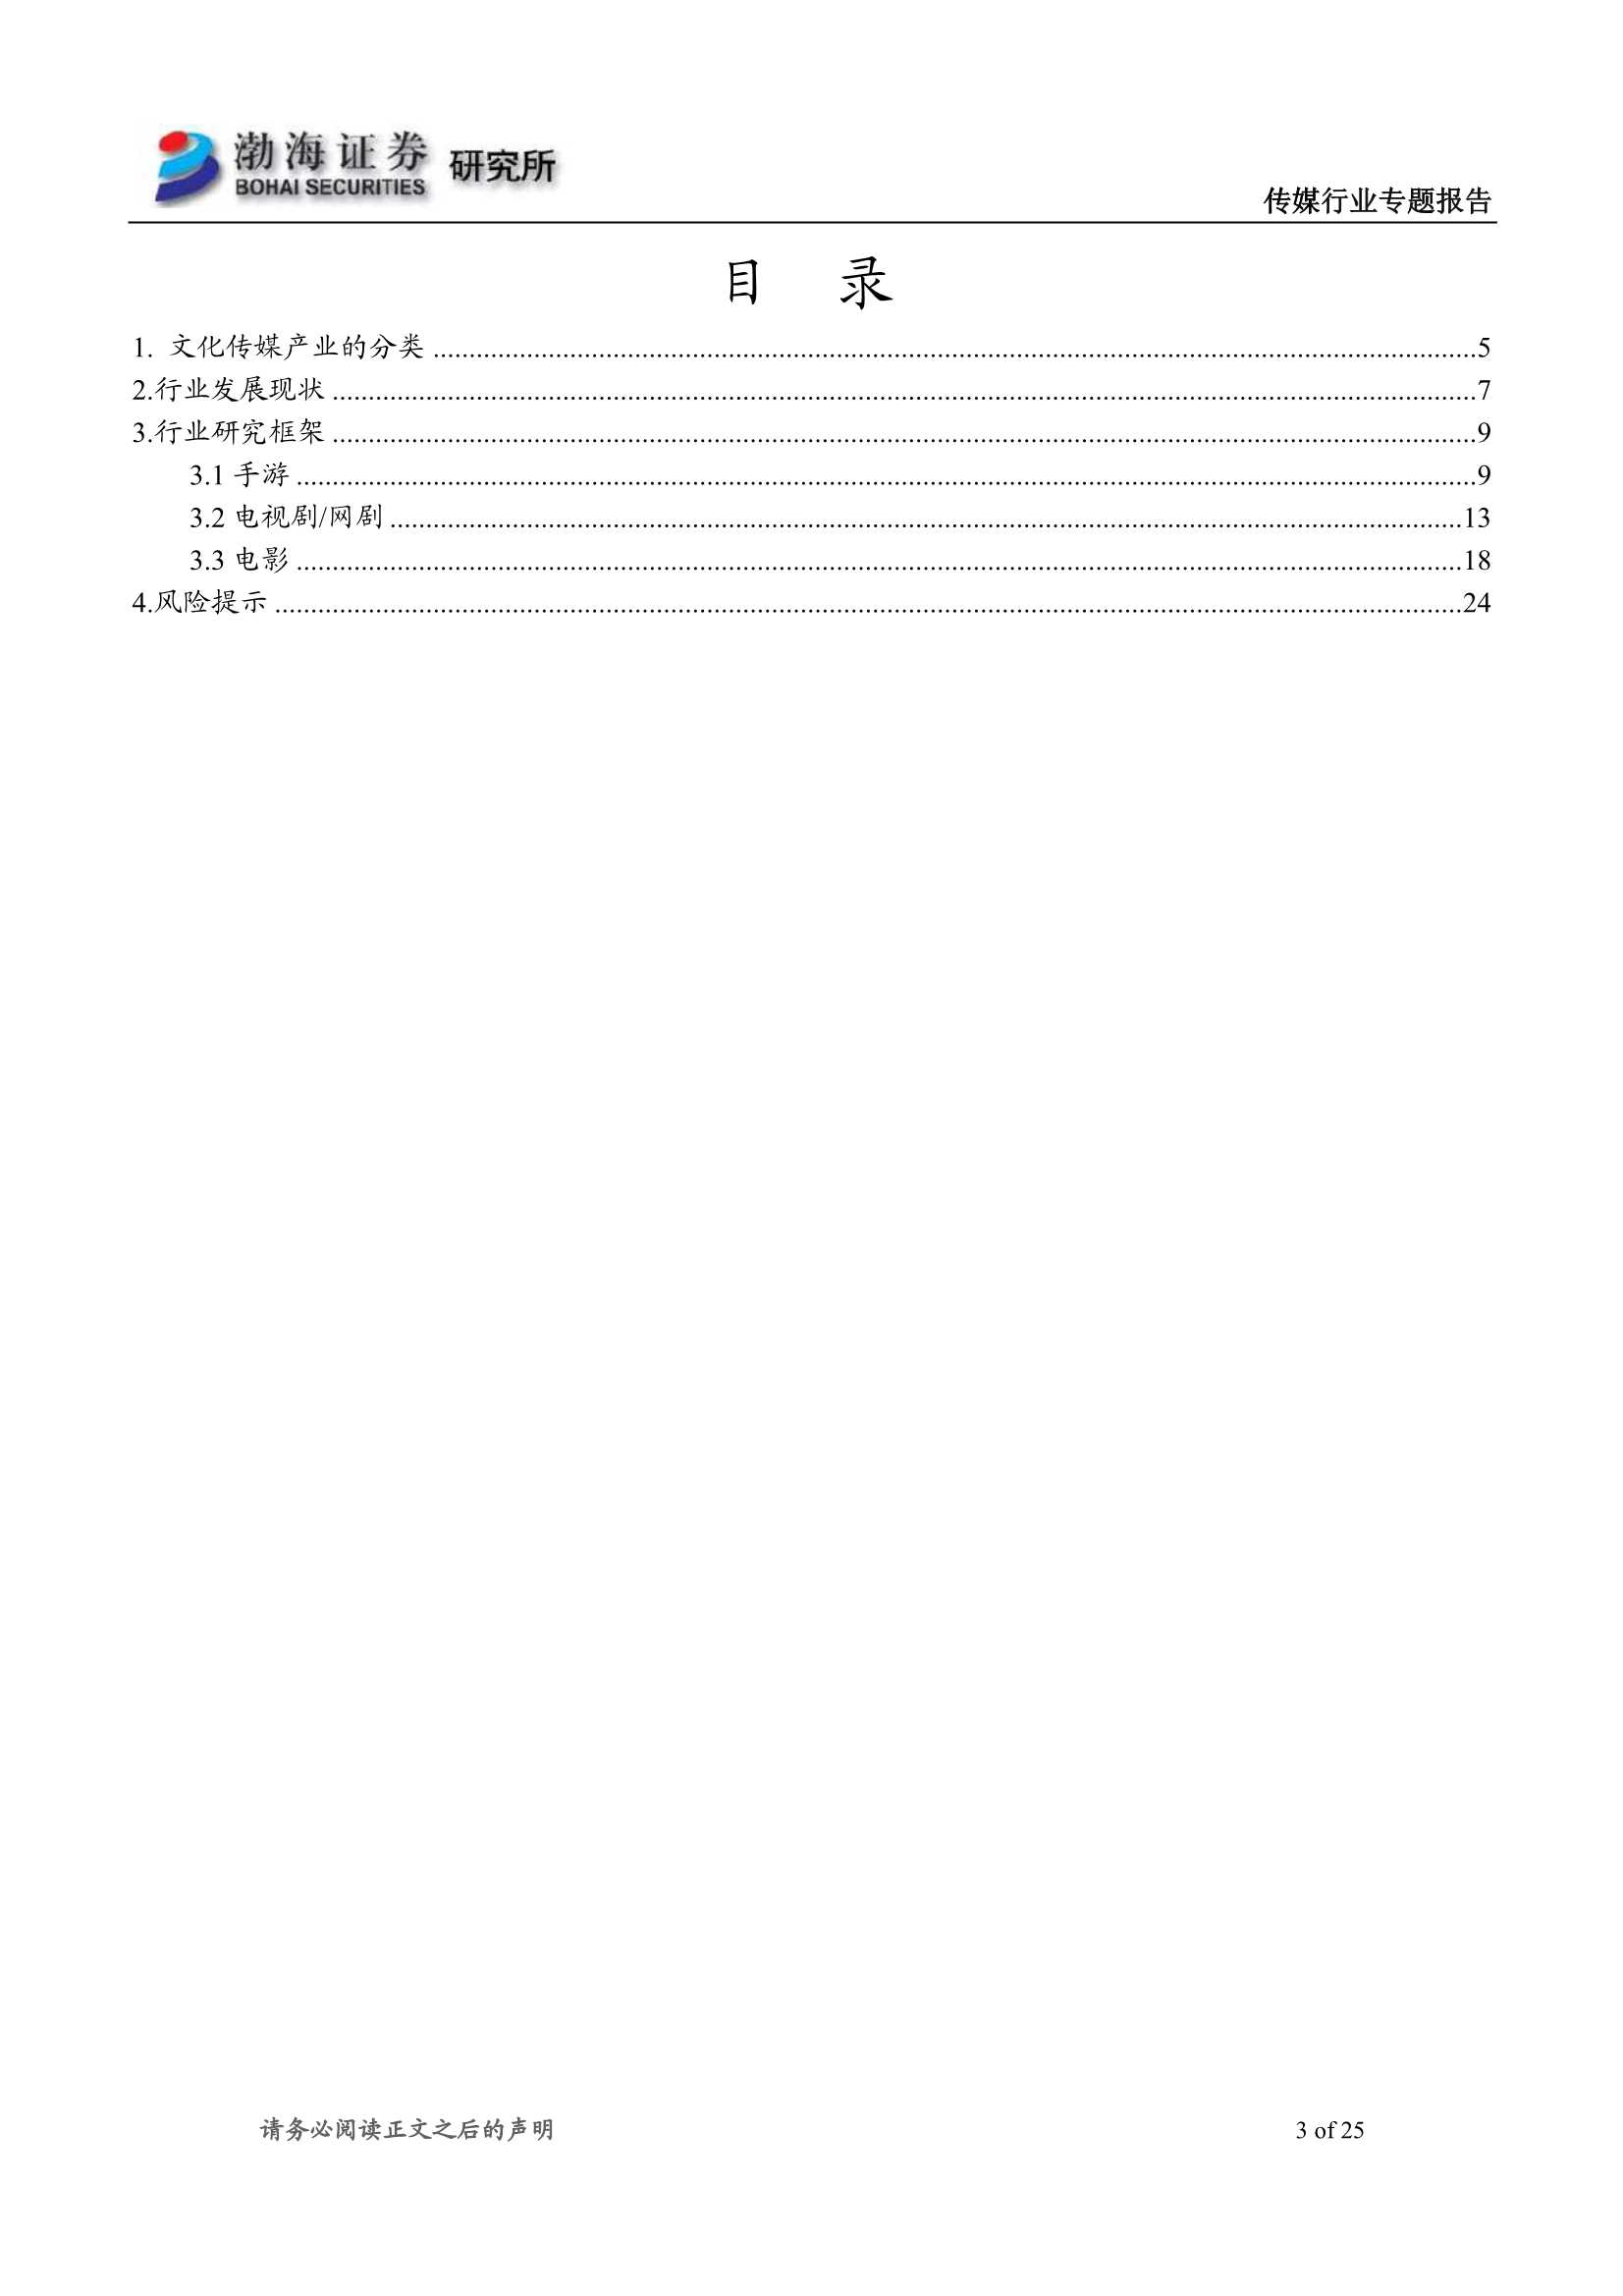 渤海证券-文化传媒行业研究框架：行业稳步发展，龙头优势持续增强-20211223-25页